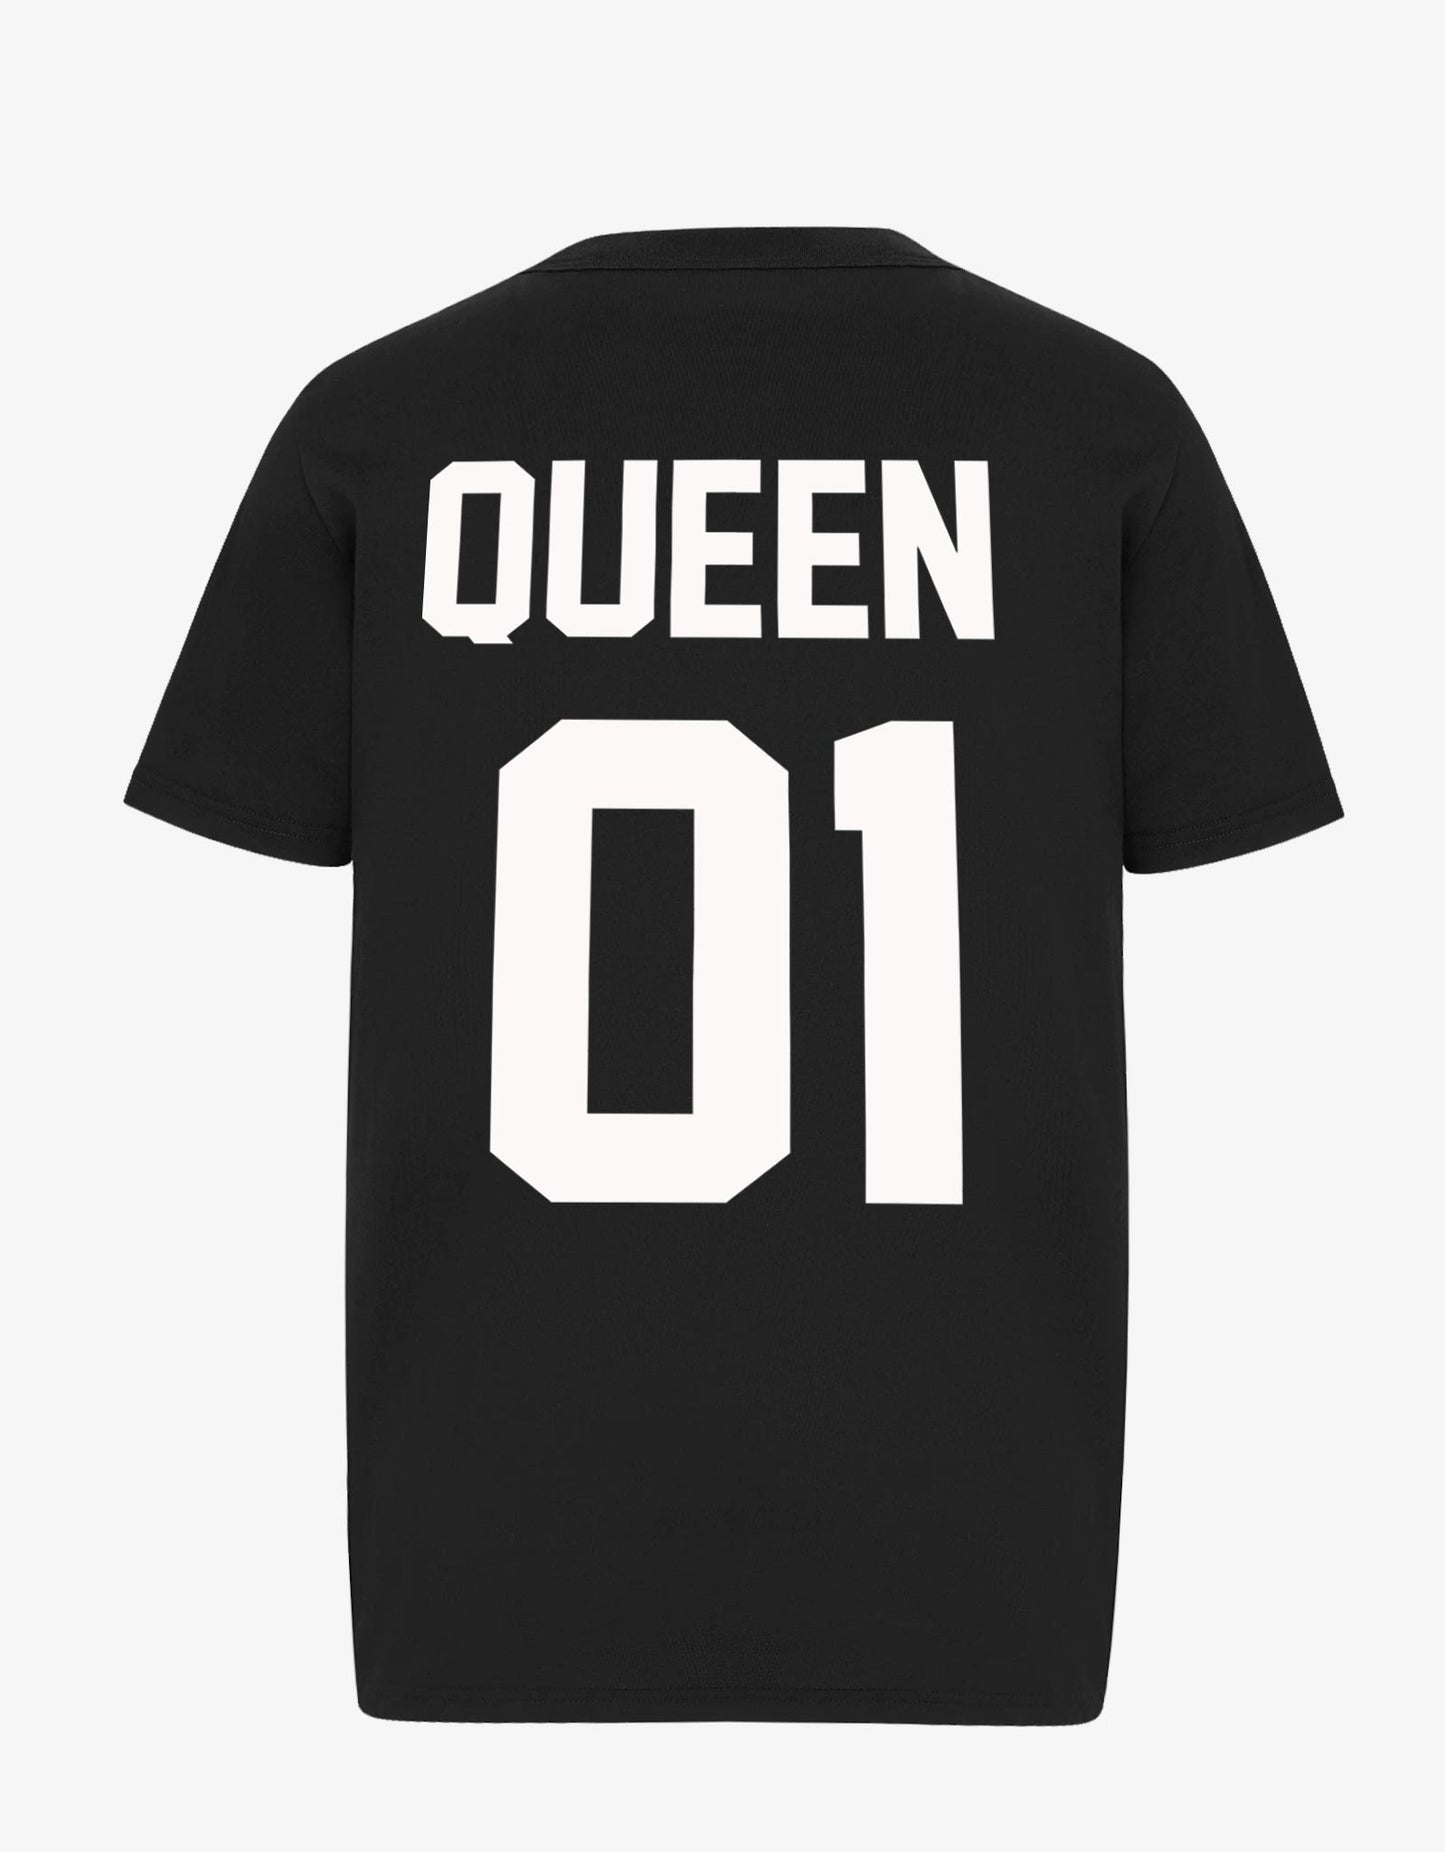 T-shirt Queen - Lasourcedustyle